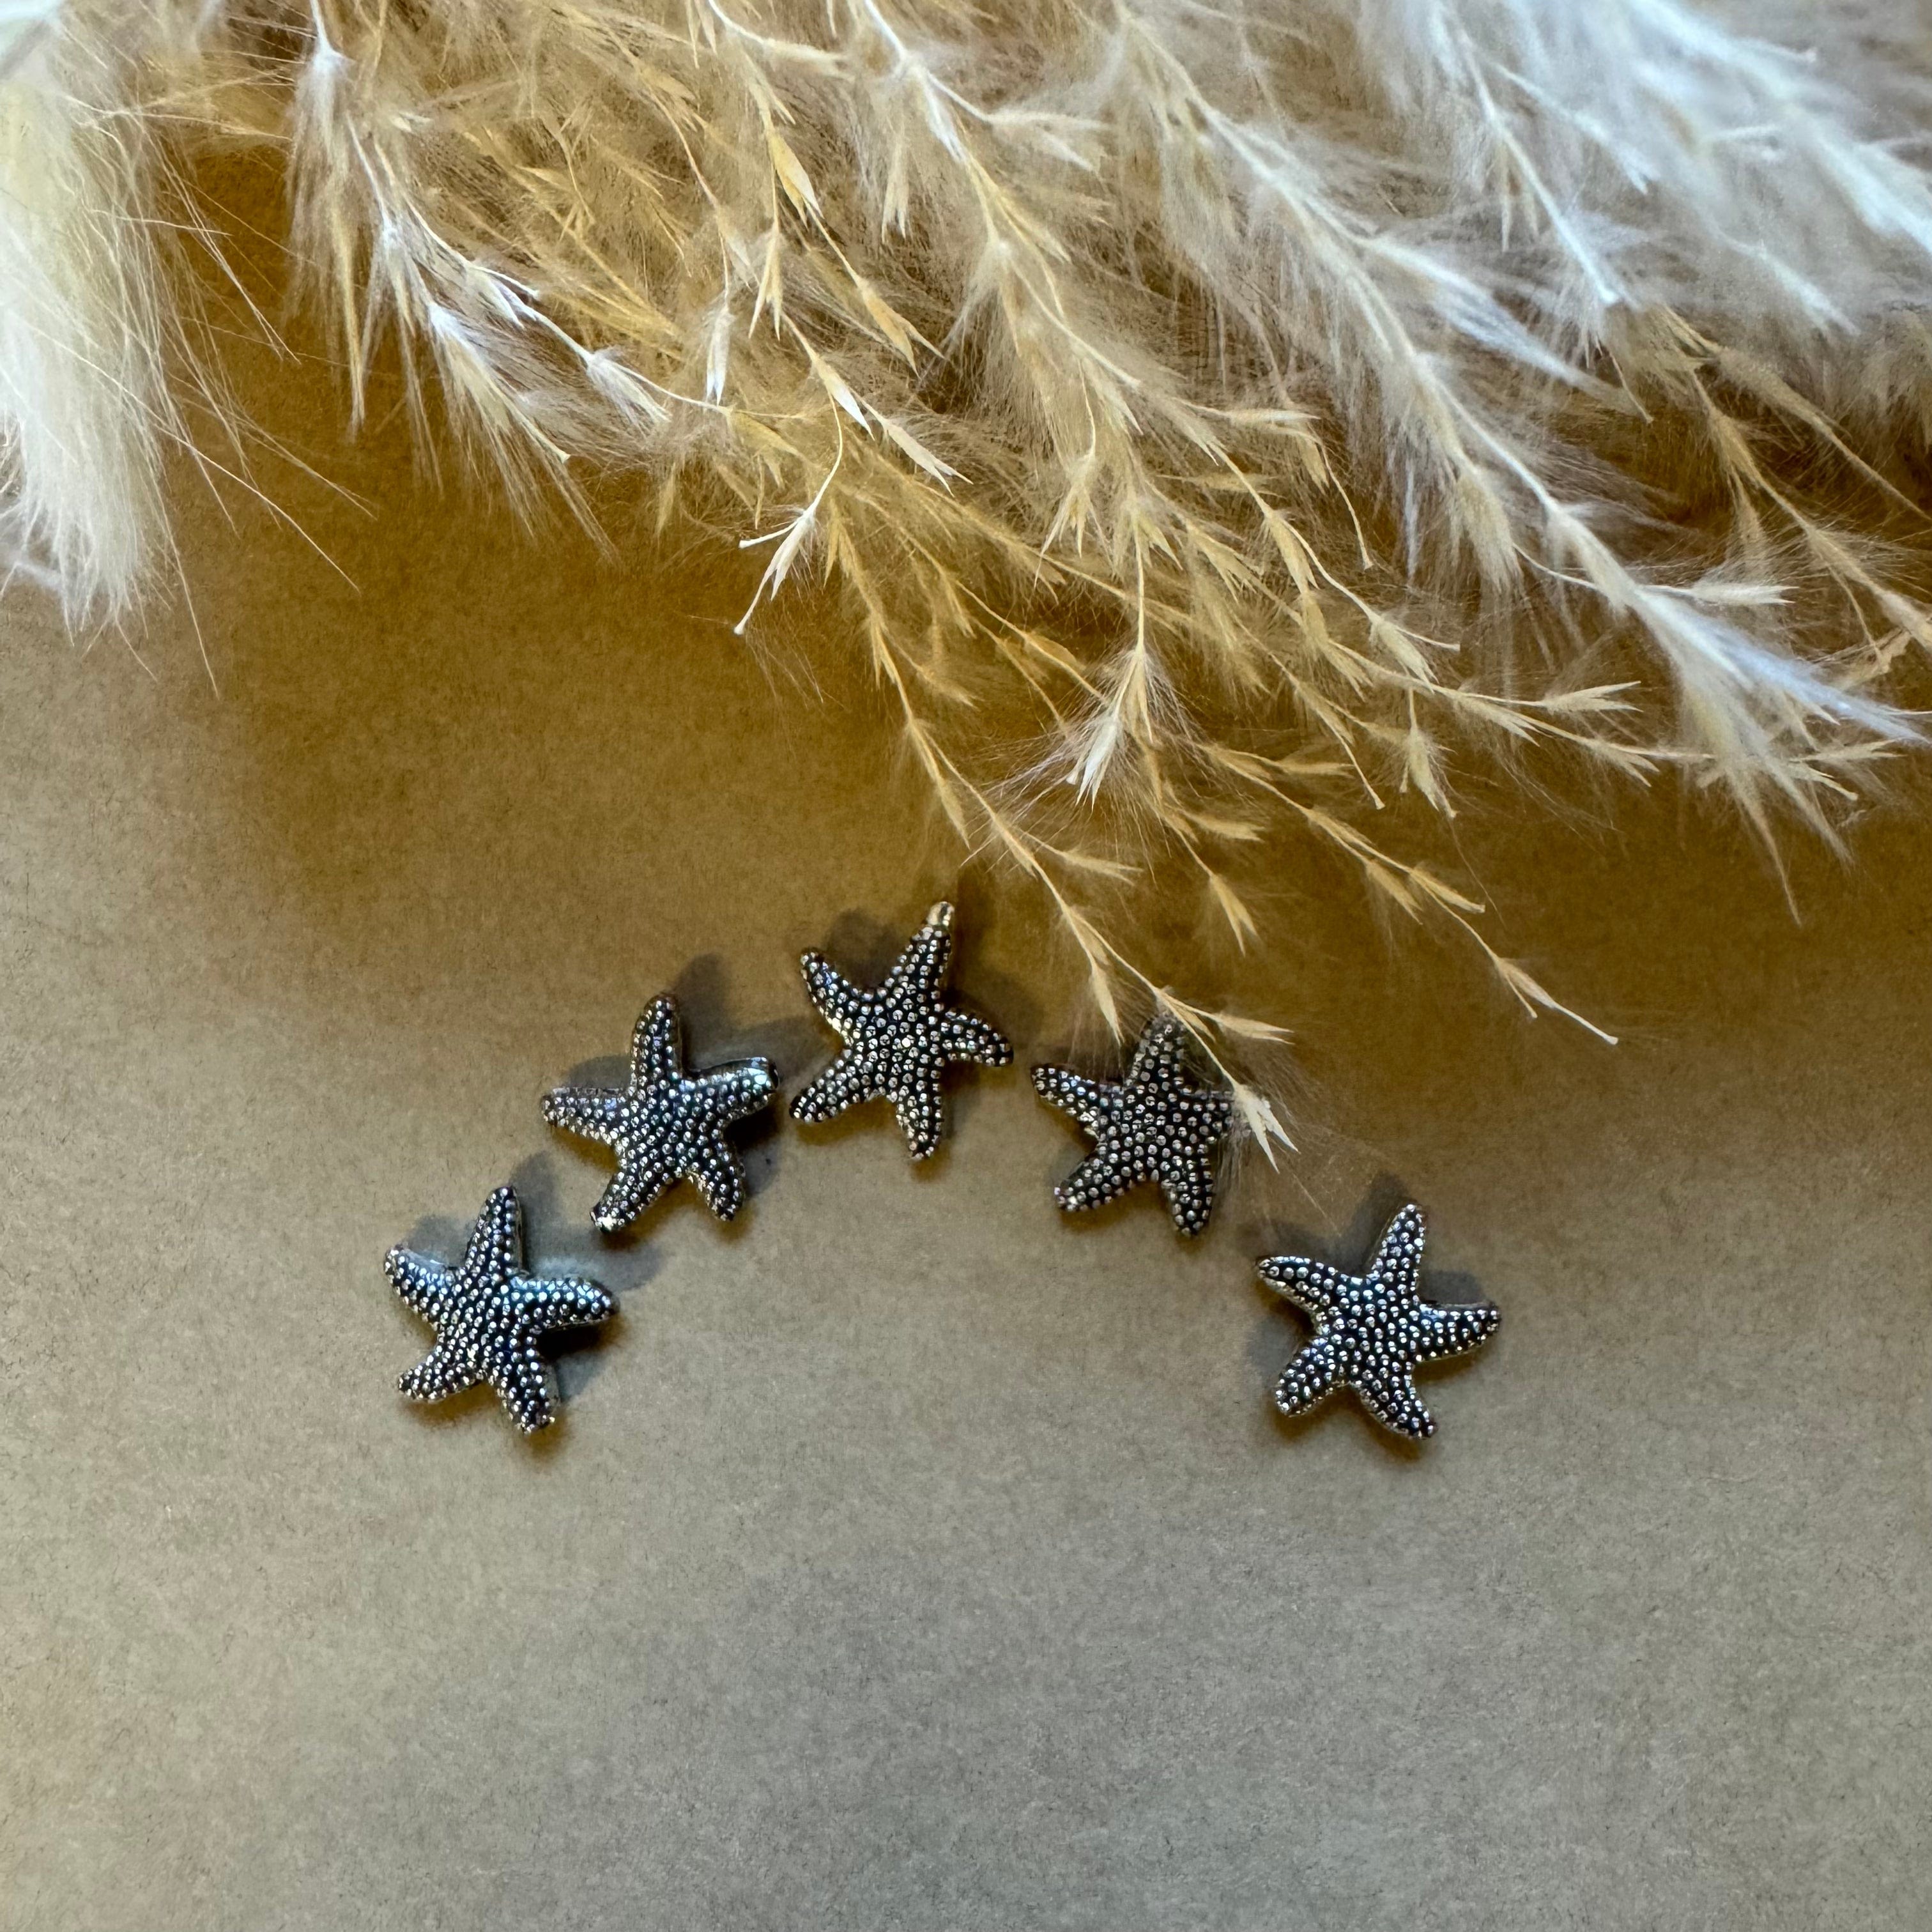 brightstars Versilberter antiker Seestern für DIY Ohrring Armband Halskette Schmuckherstellung - zwei Größen